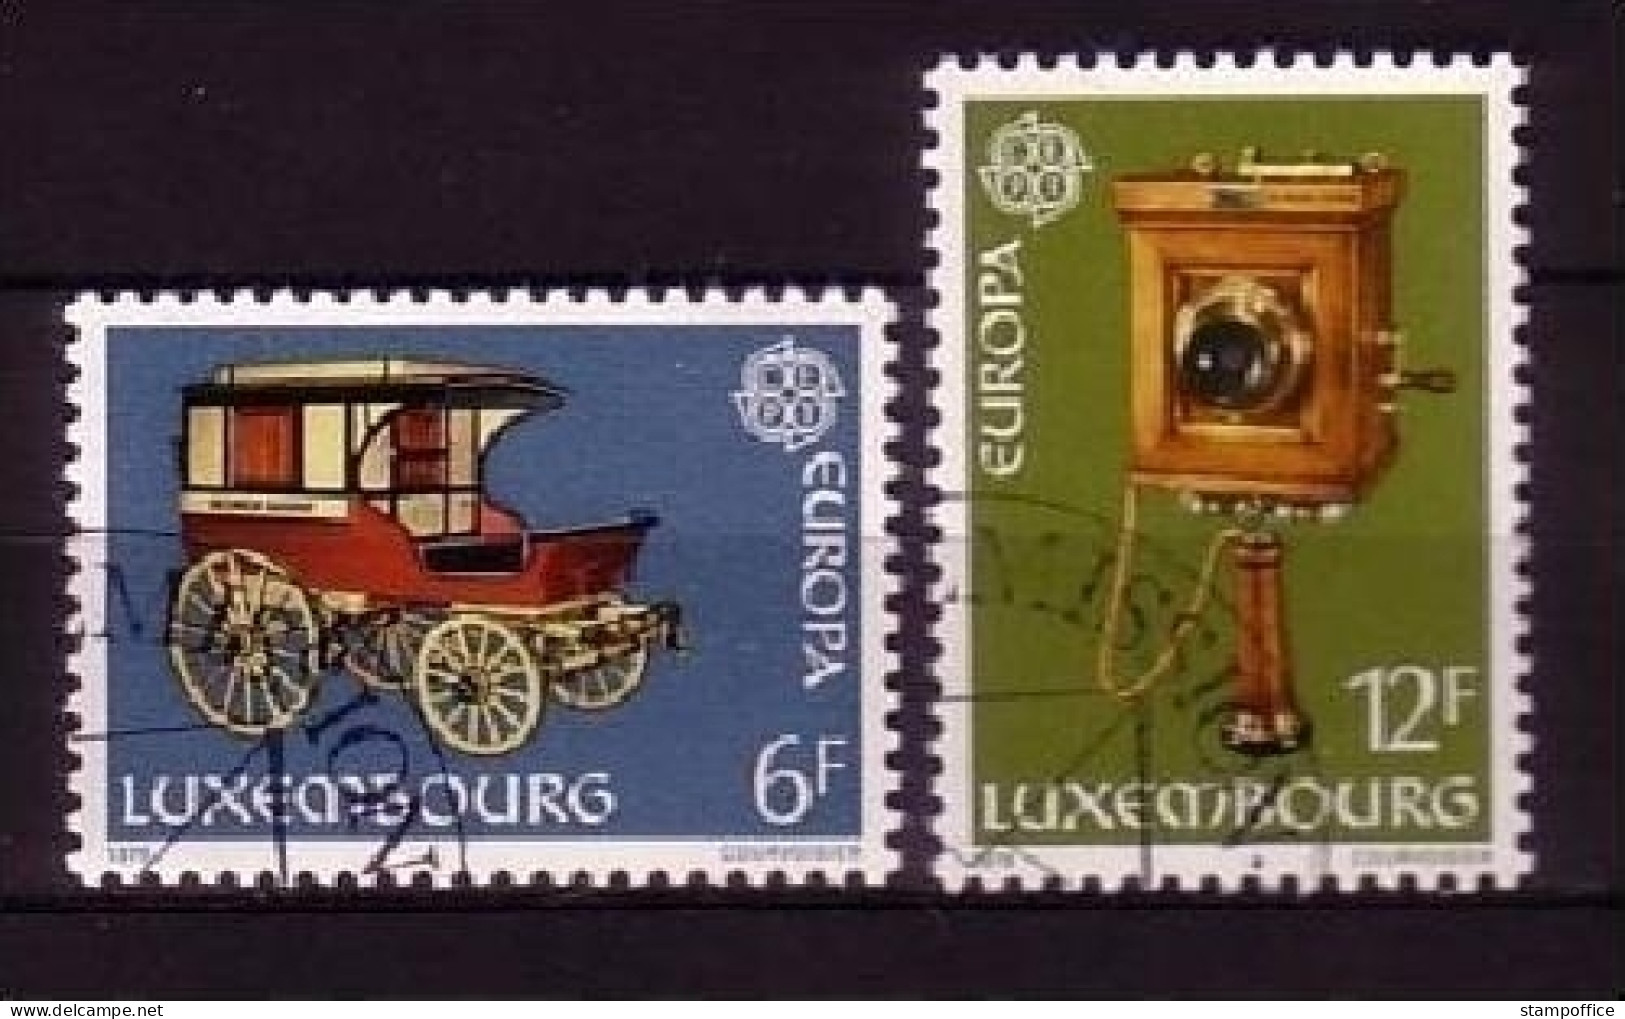 LUXEMBURG MI-NR. 987-988 GESTEMPELT(USED) EUROPA 1979 POST- Und FERNMELDEWESEN KUTSCHE - 1979